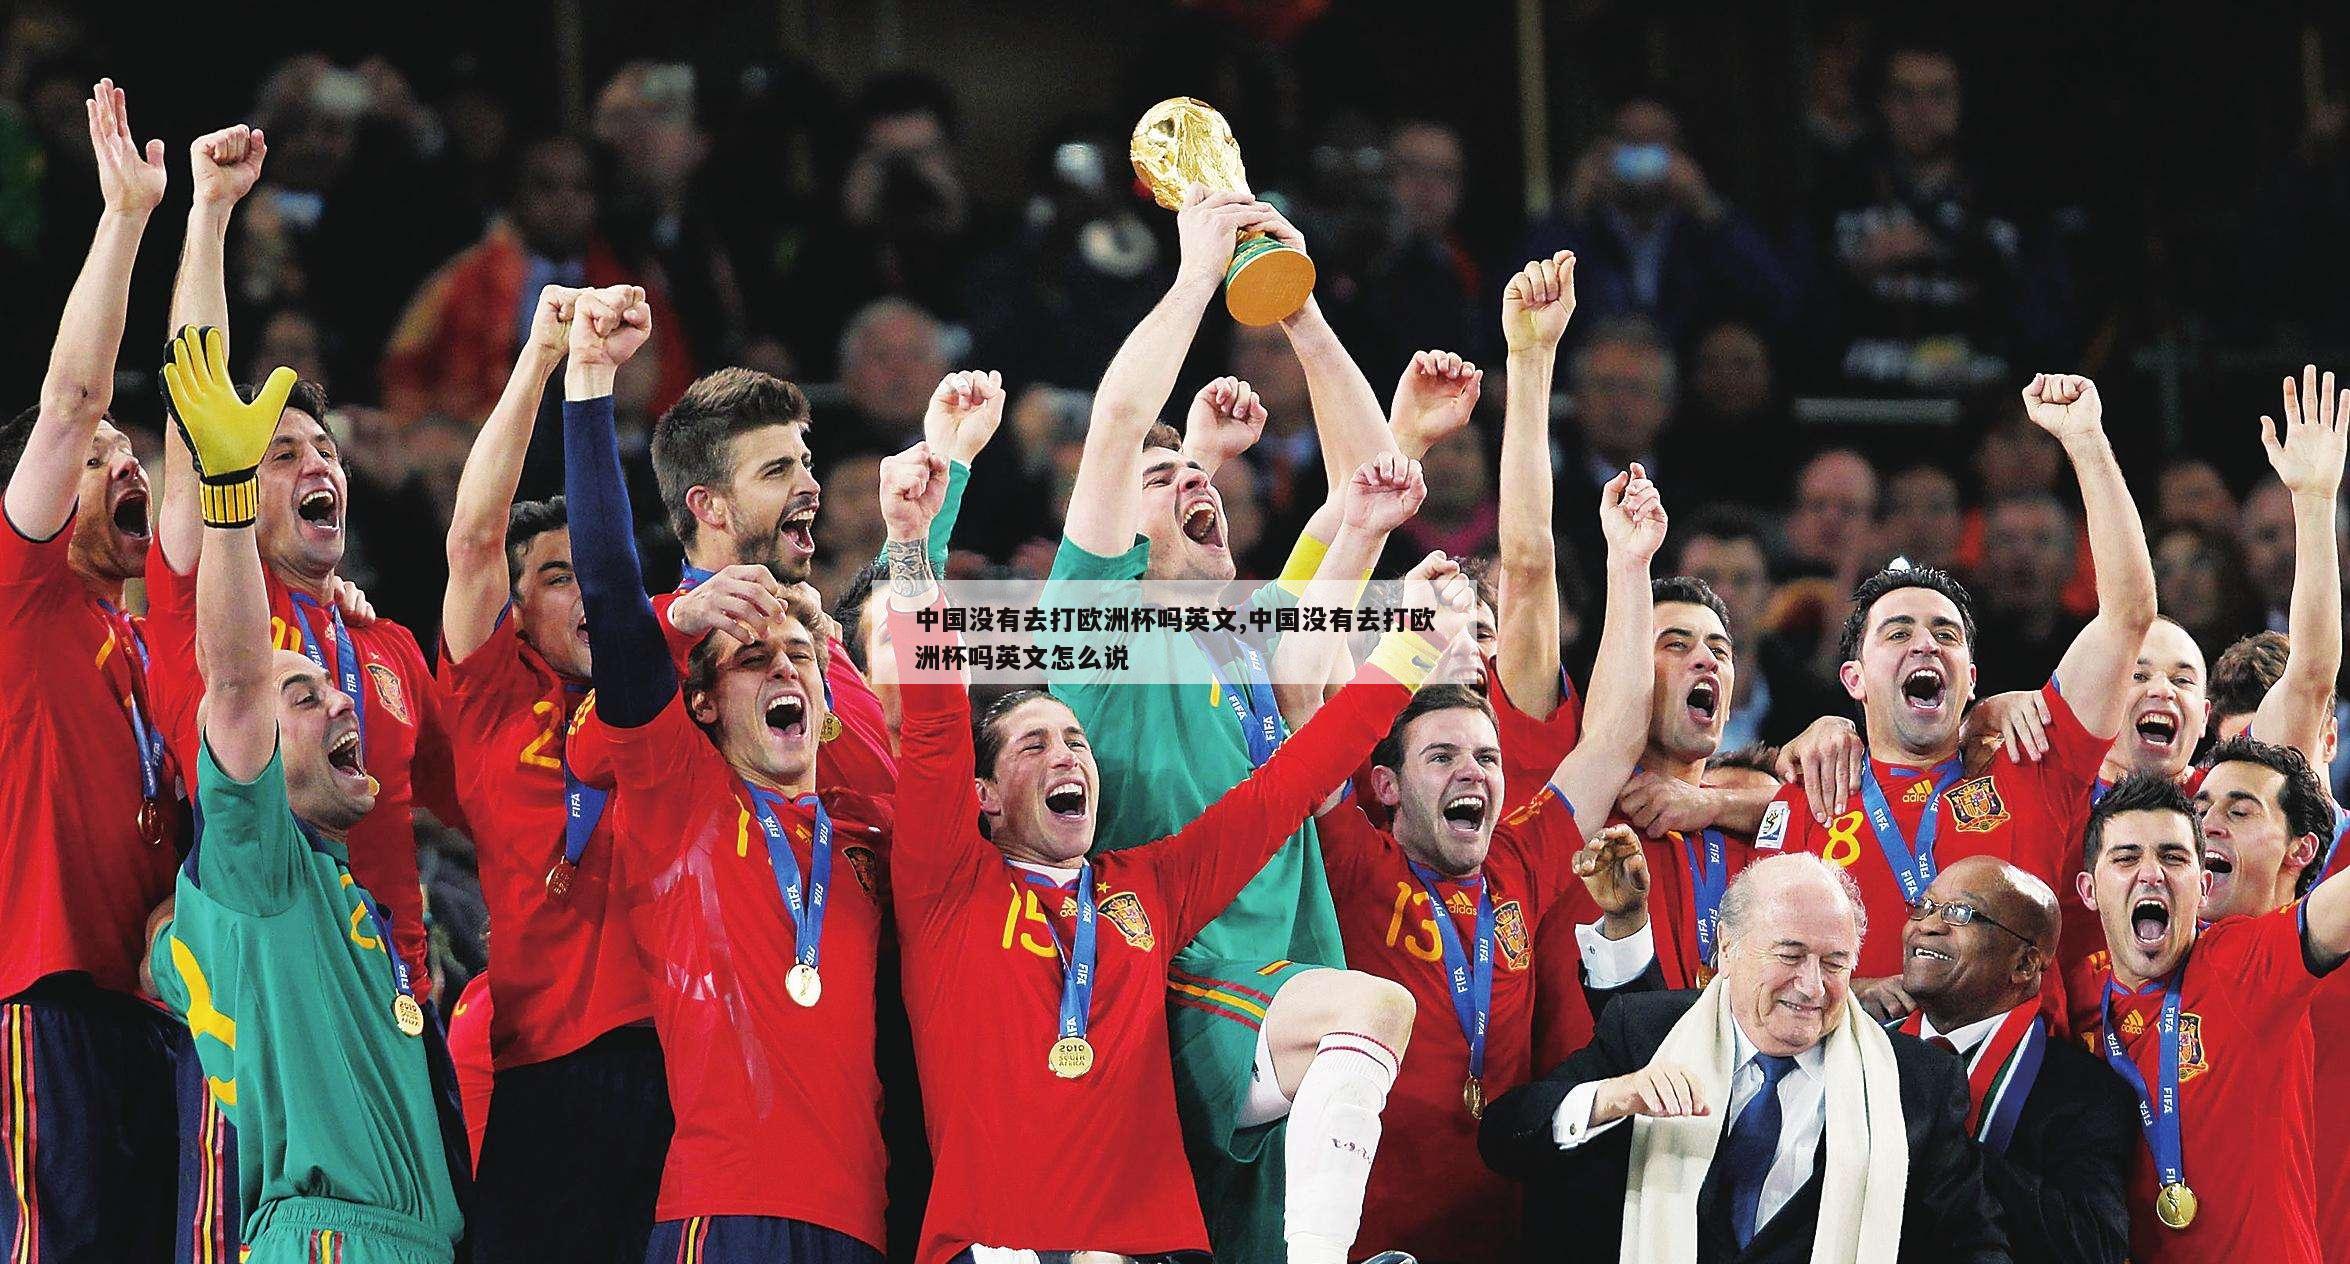 中国没有去打欧洲杯吗英文,中国没有去打欧洲杯吗英文怎么说